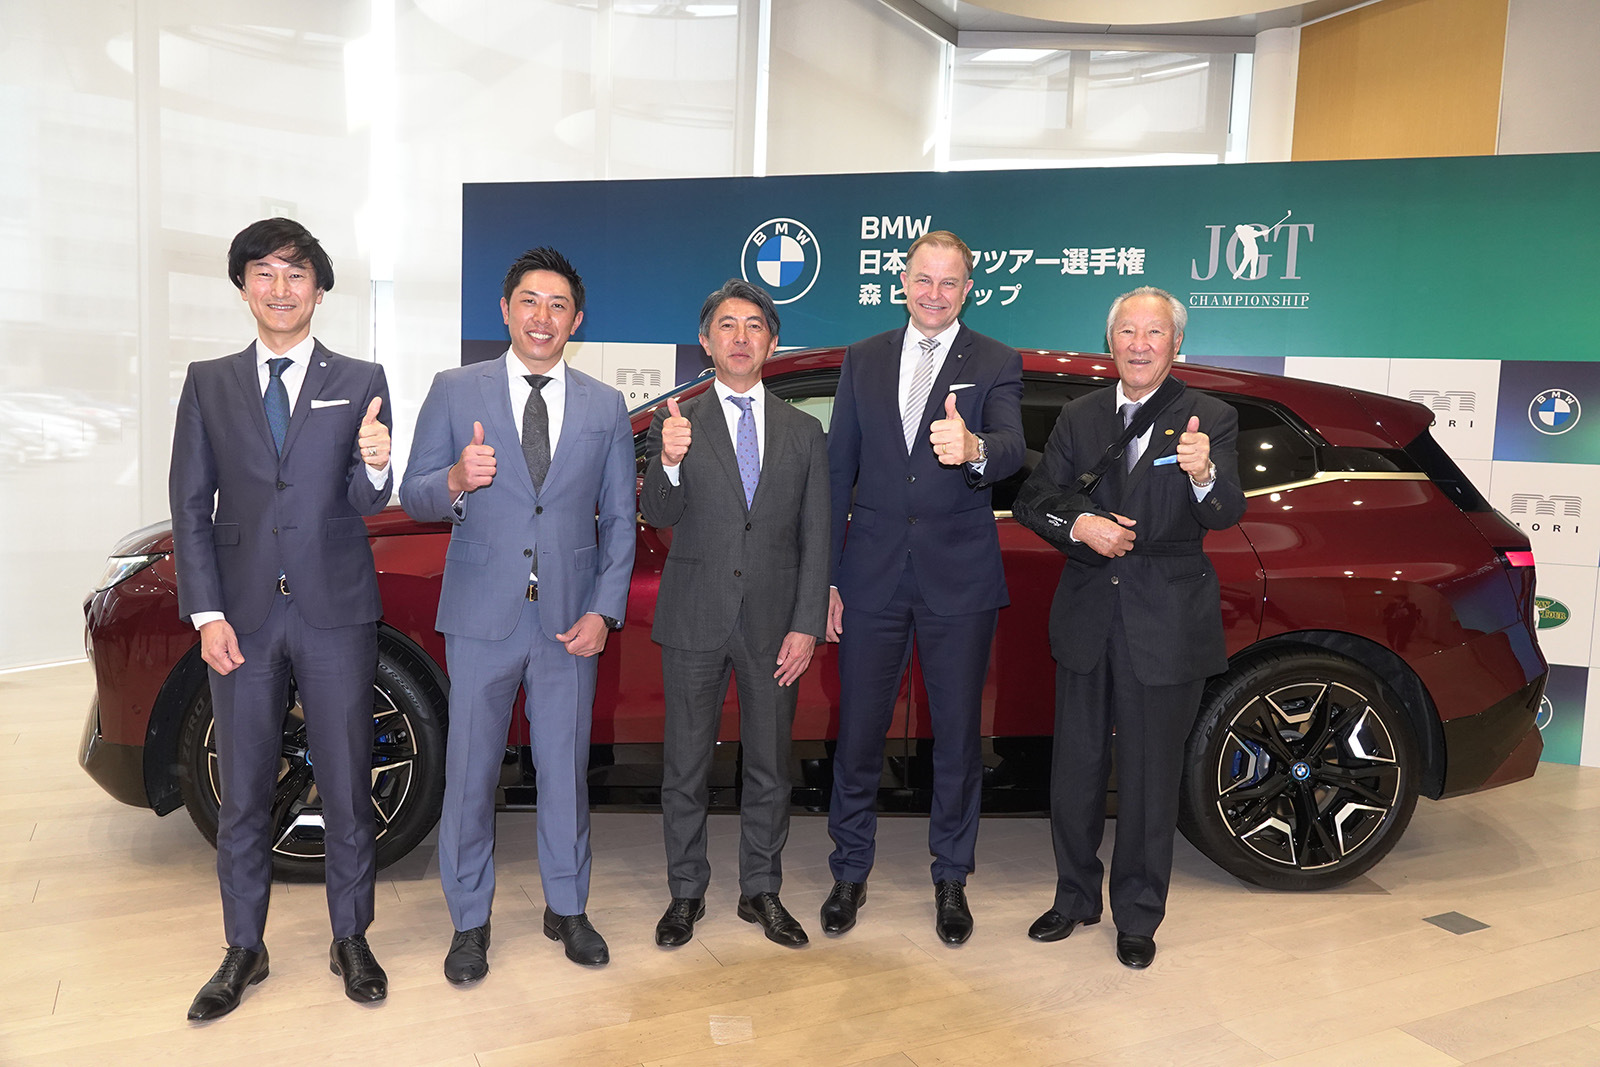 BMWが日本男子ツアーのメジャーのスポンサーに | ゴルフグローバル